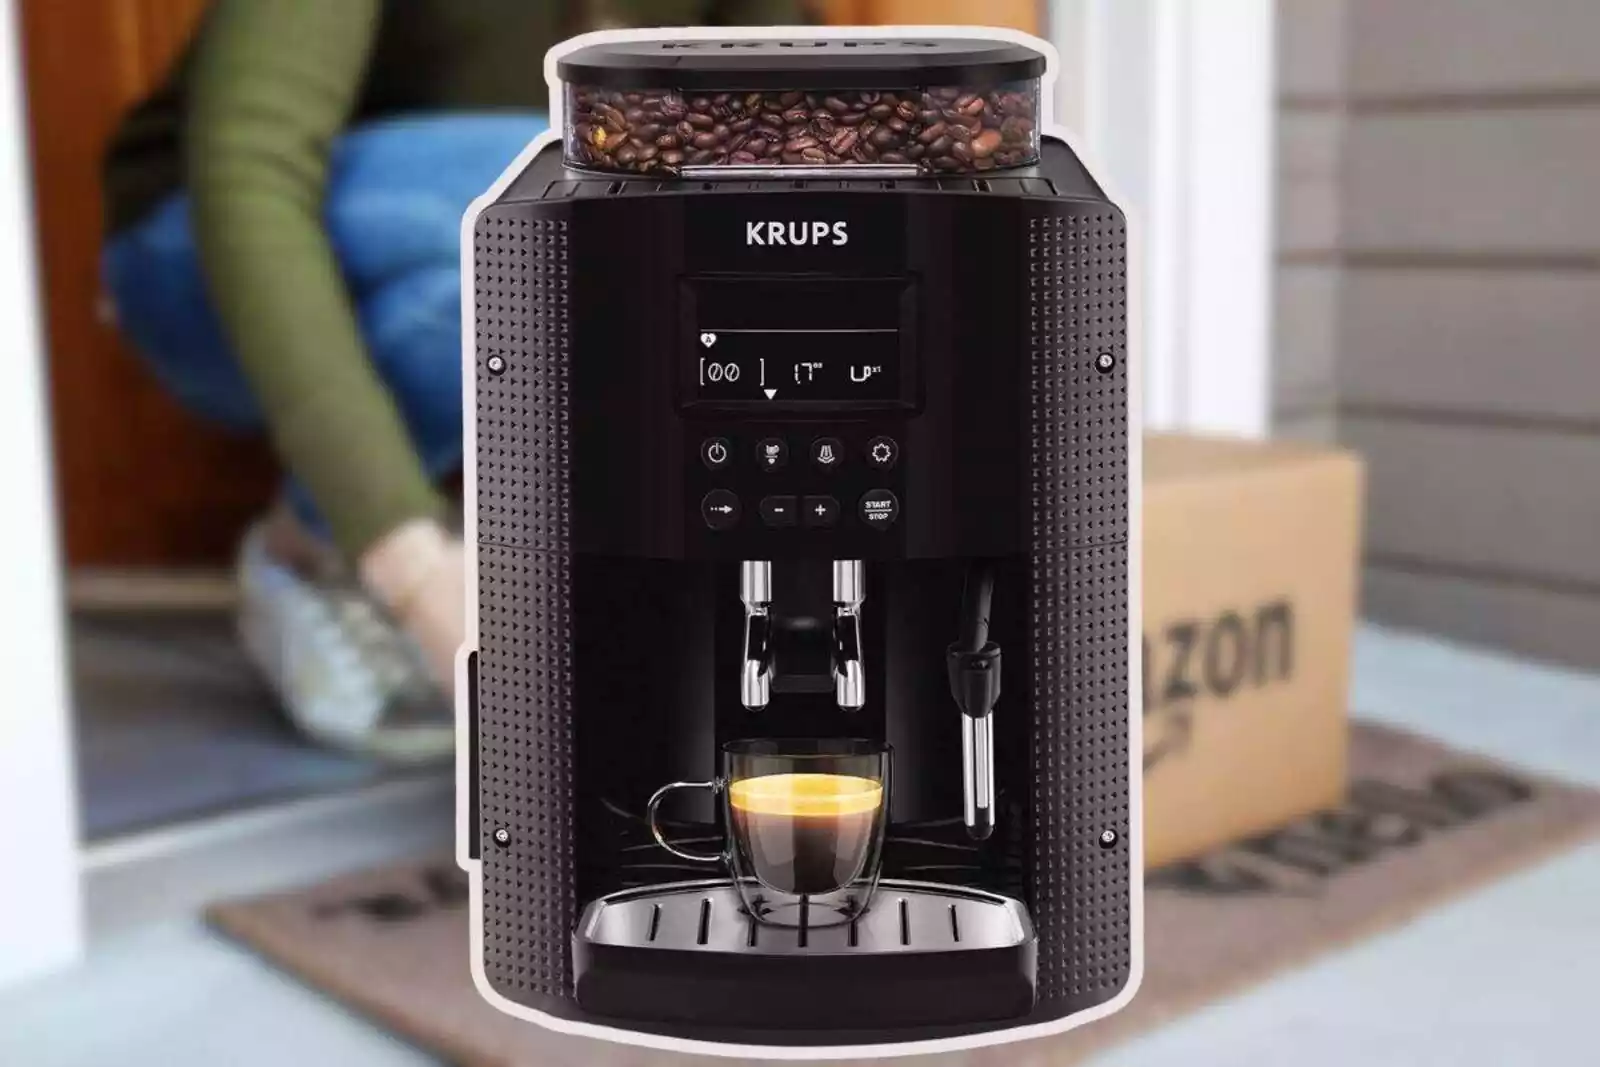 Más de 100 euros de rebaja en esta cafetera superautomática Krups  sencillísima de utilizar para obtener café de calidad al instante